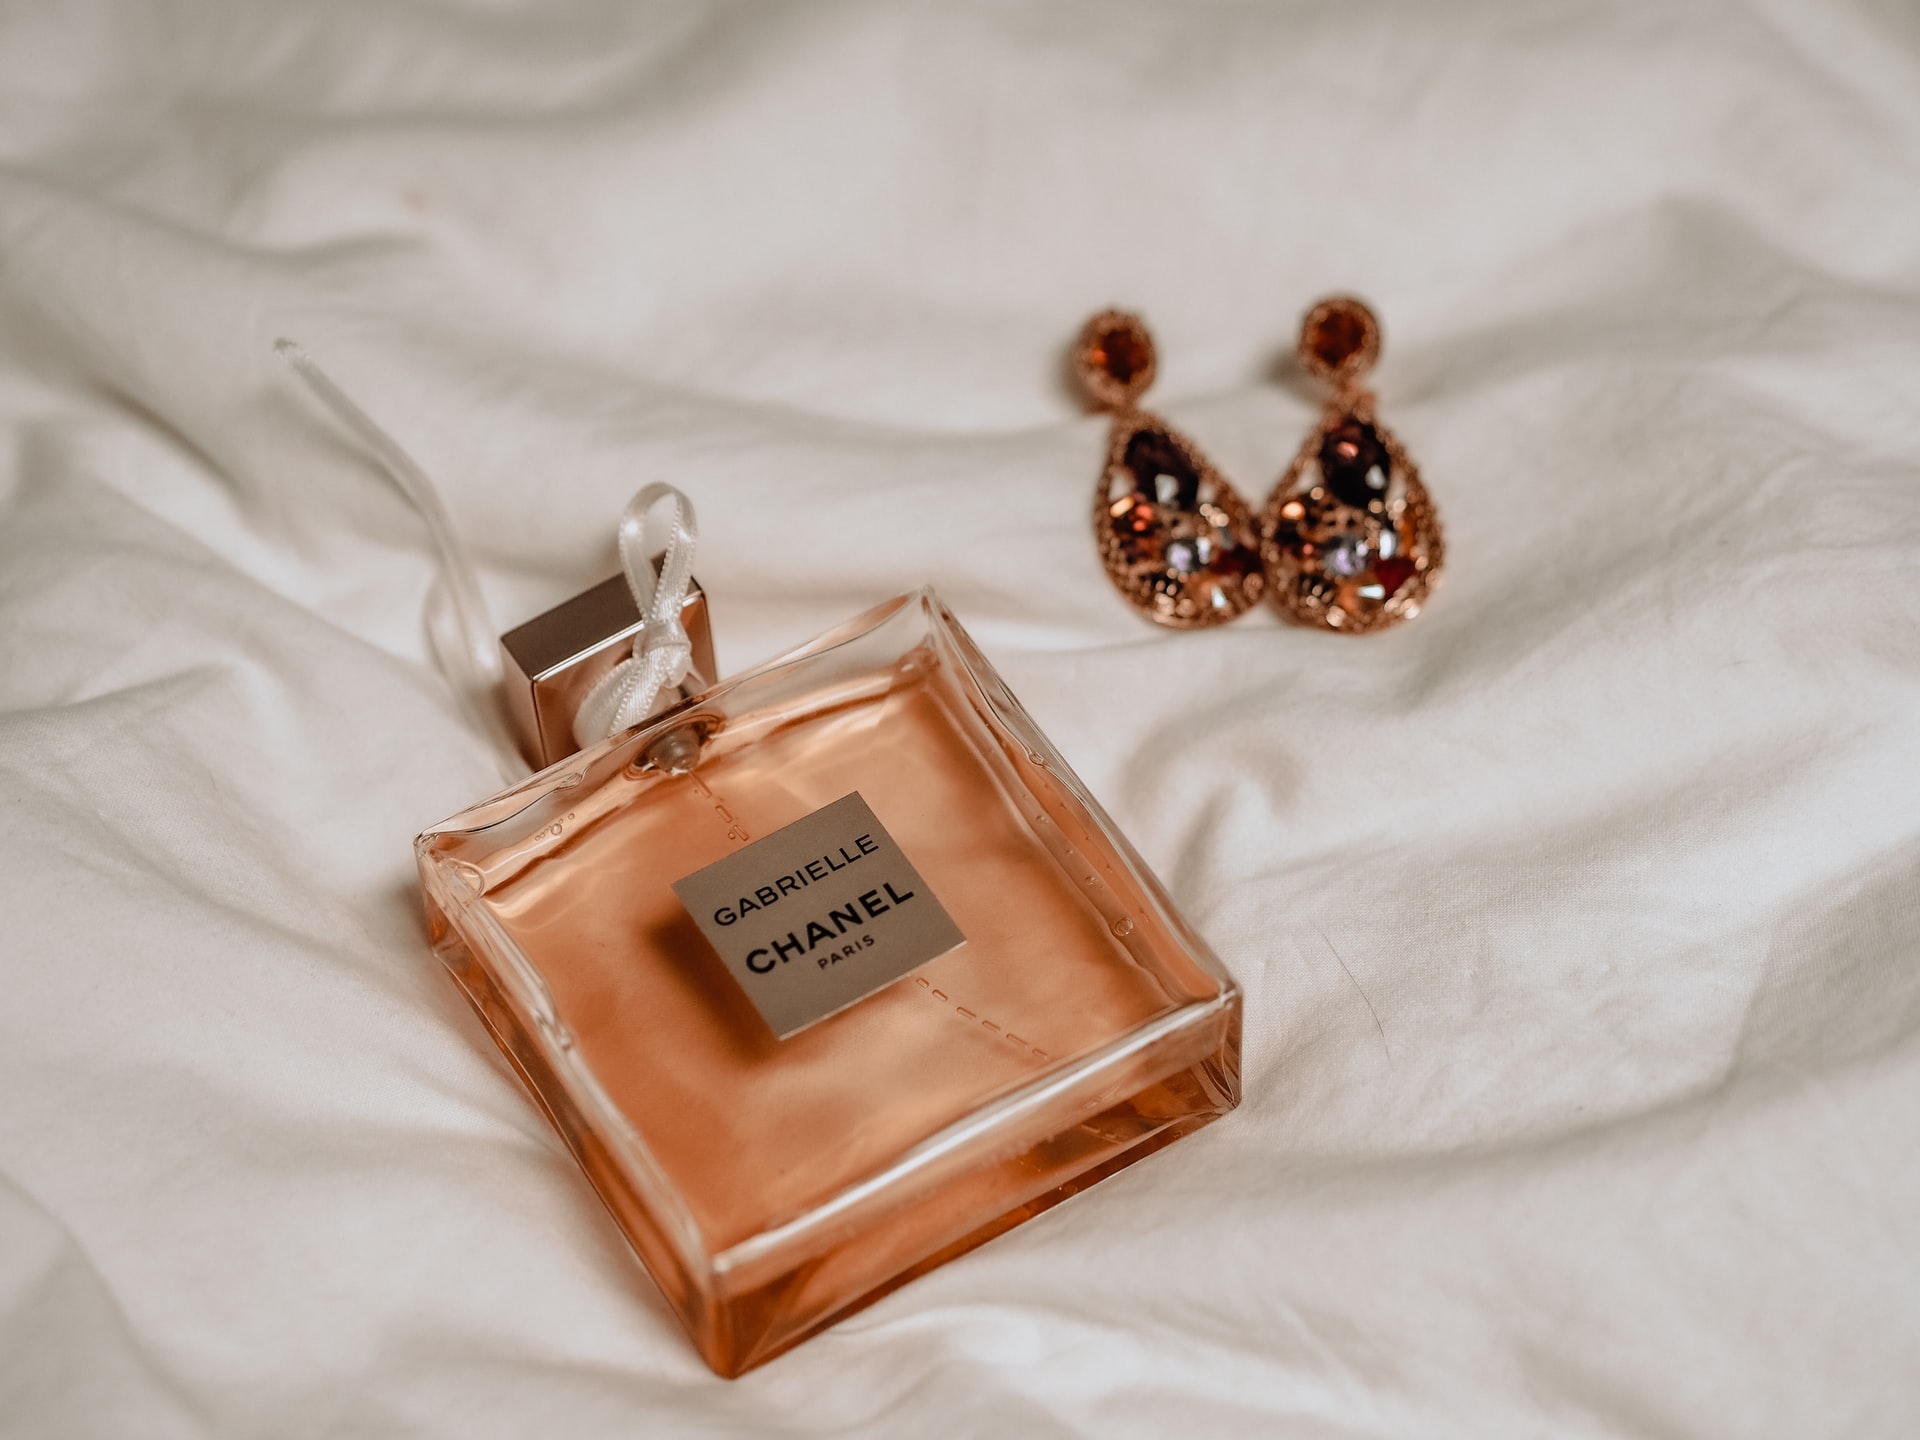 Perfume - Chanel Gabrielle